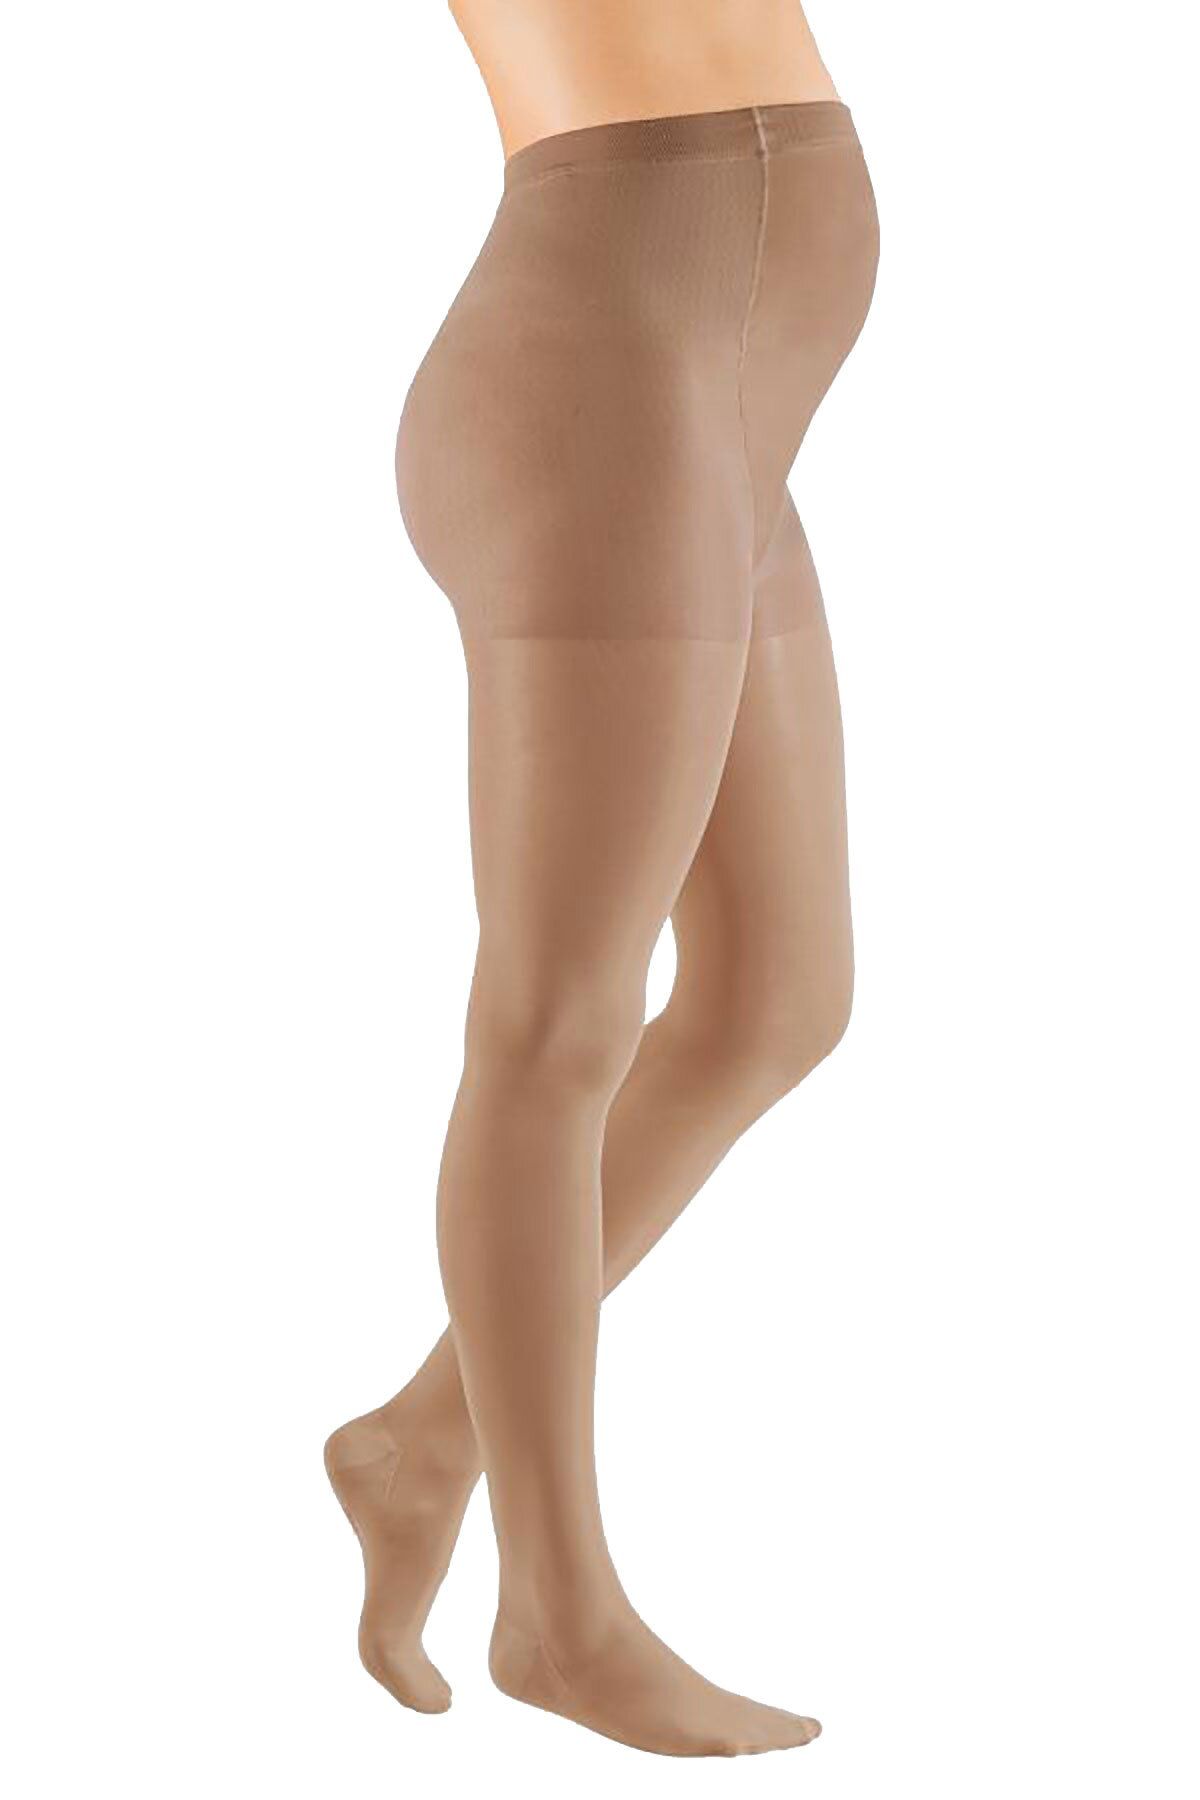 Колготки для беременных mediven ELEGANCE (AG-62-71 см), закрытый носок, 2 класс